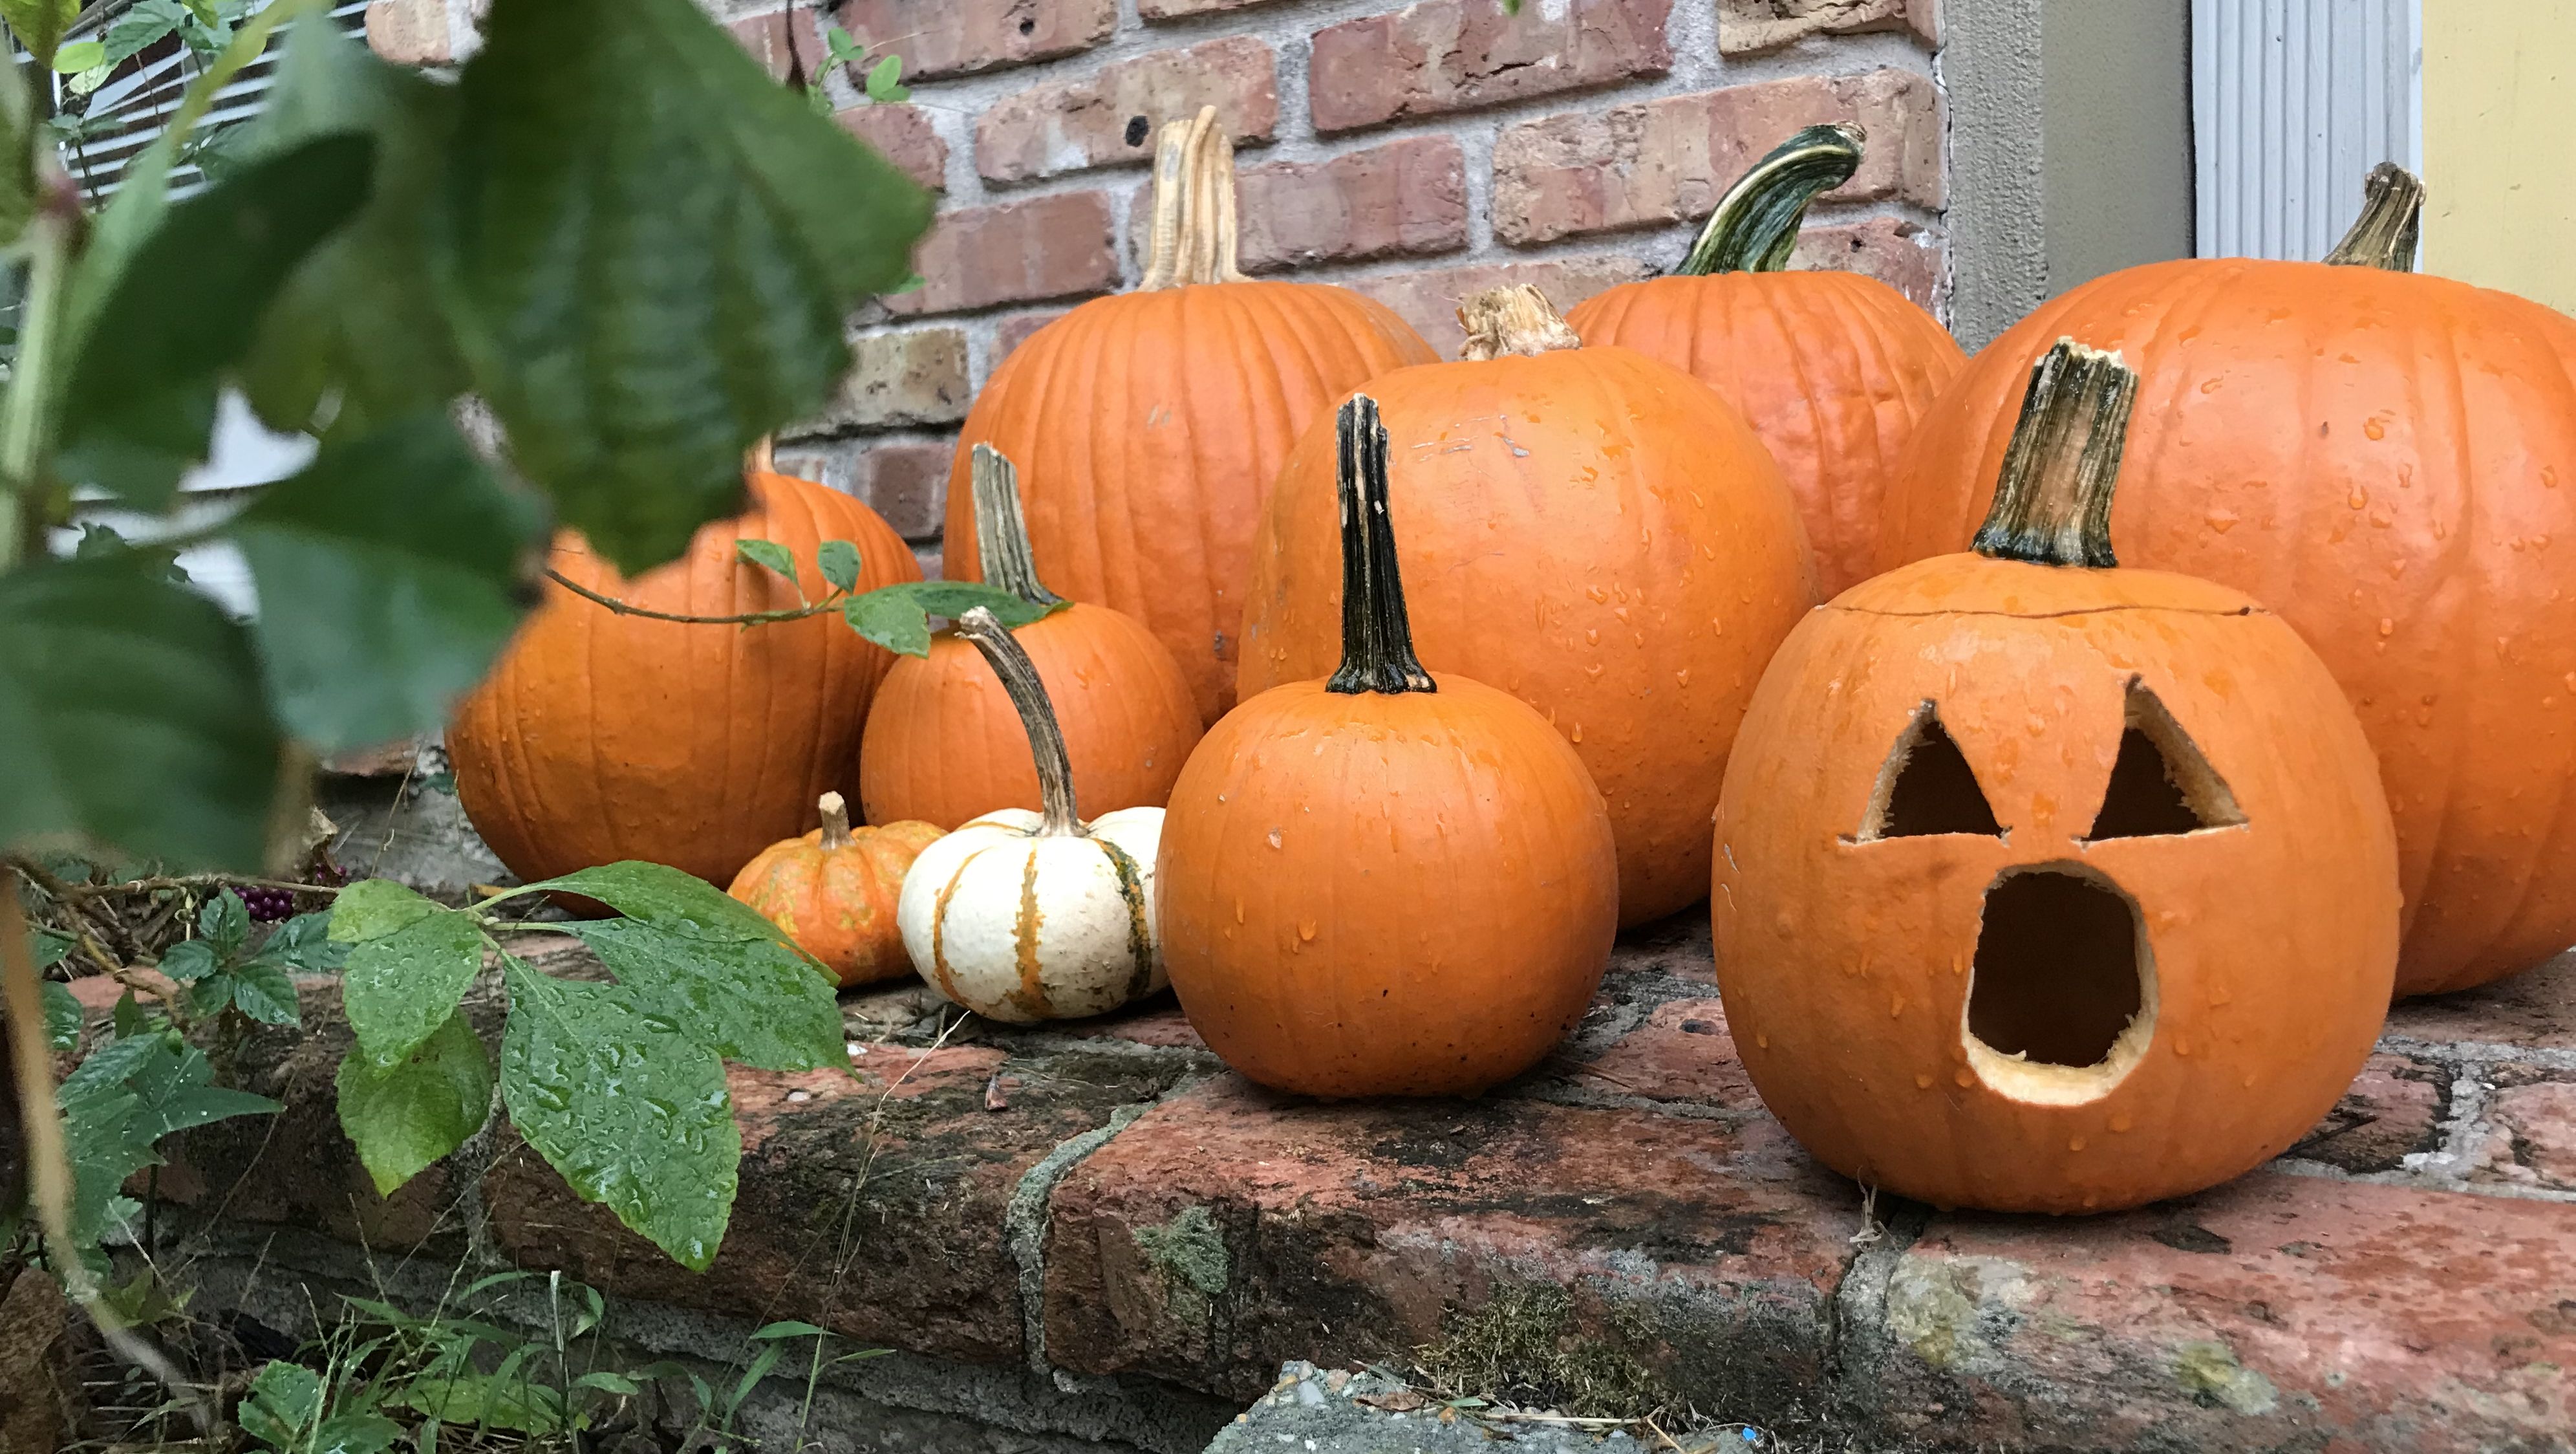 Photo shows pumpkins on a porch